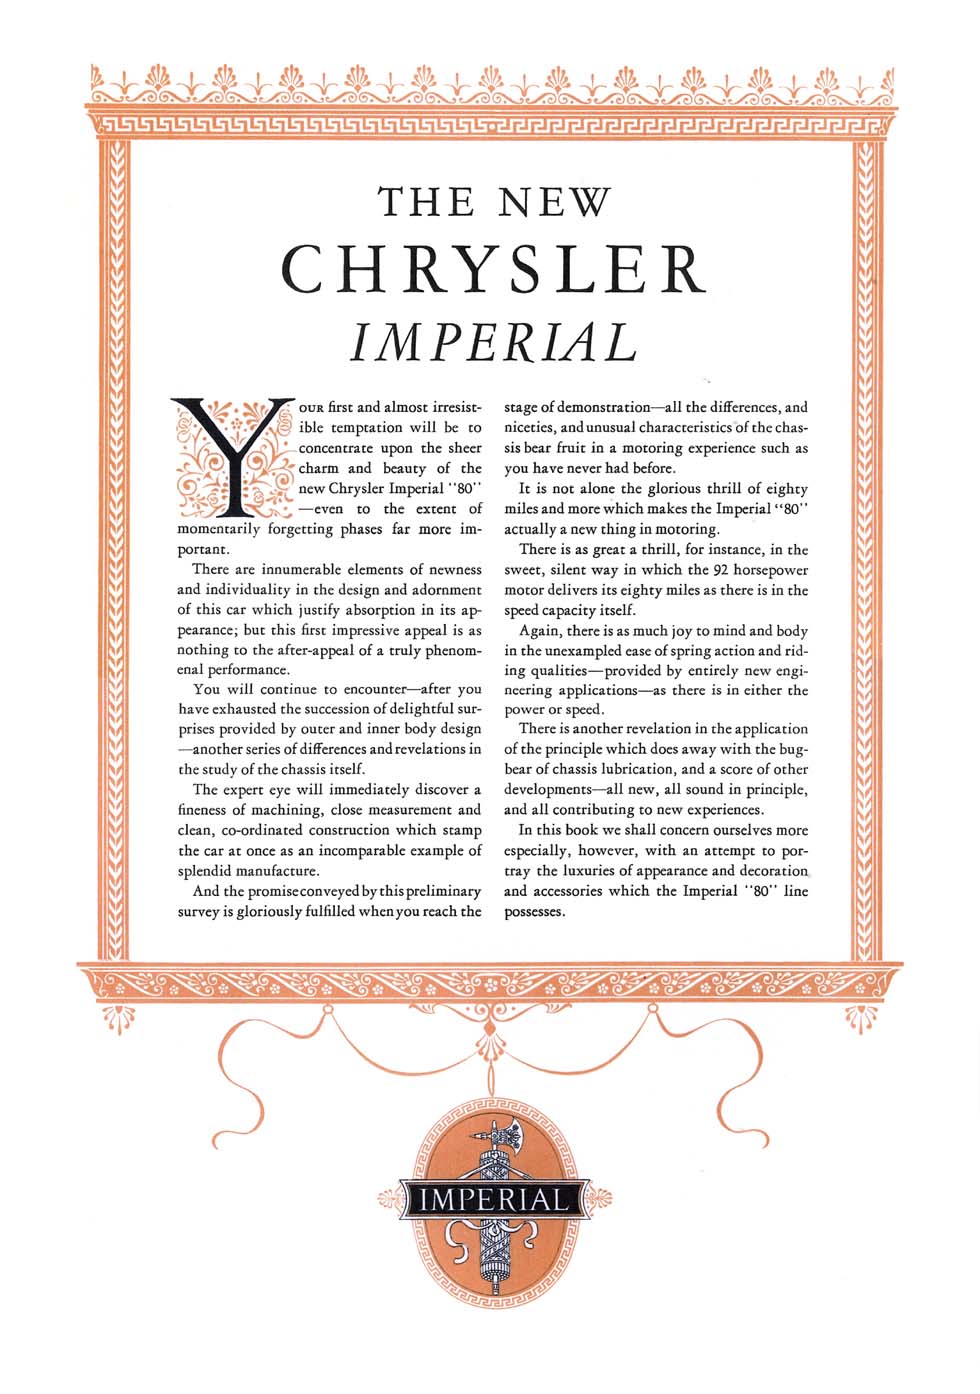 1926_Chrysler_Imperial-04